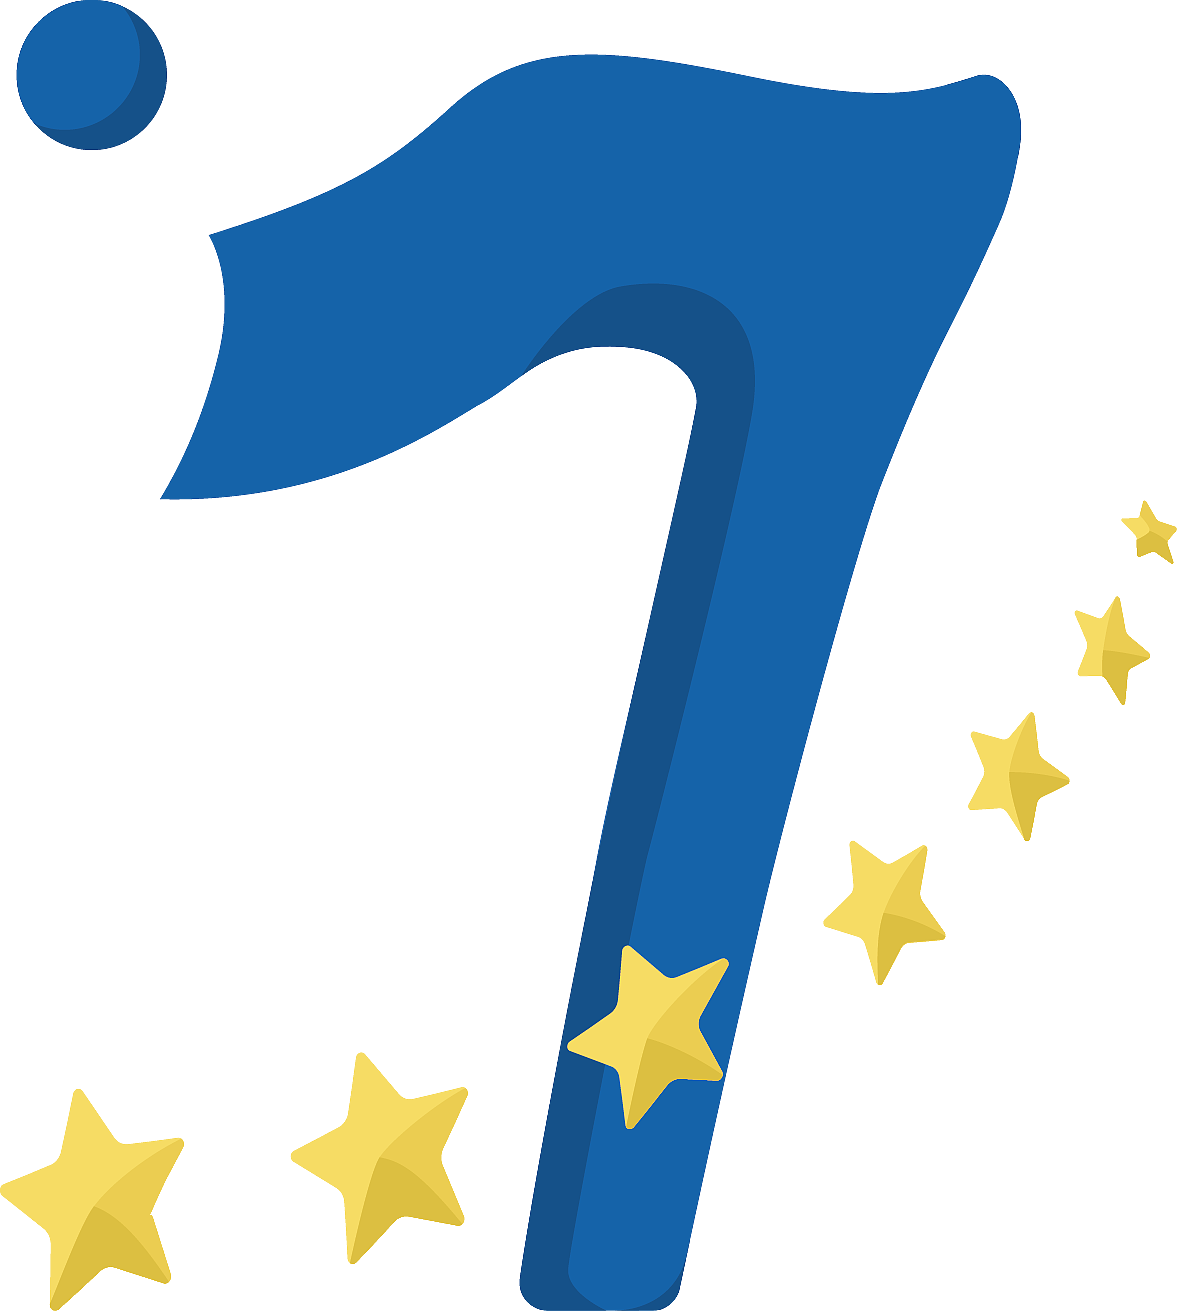 logo用一个像飘扬的旗帜一般的7字,被七颗闪亮的星环绕,寓意着工作室